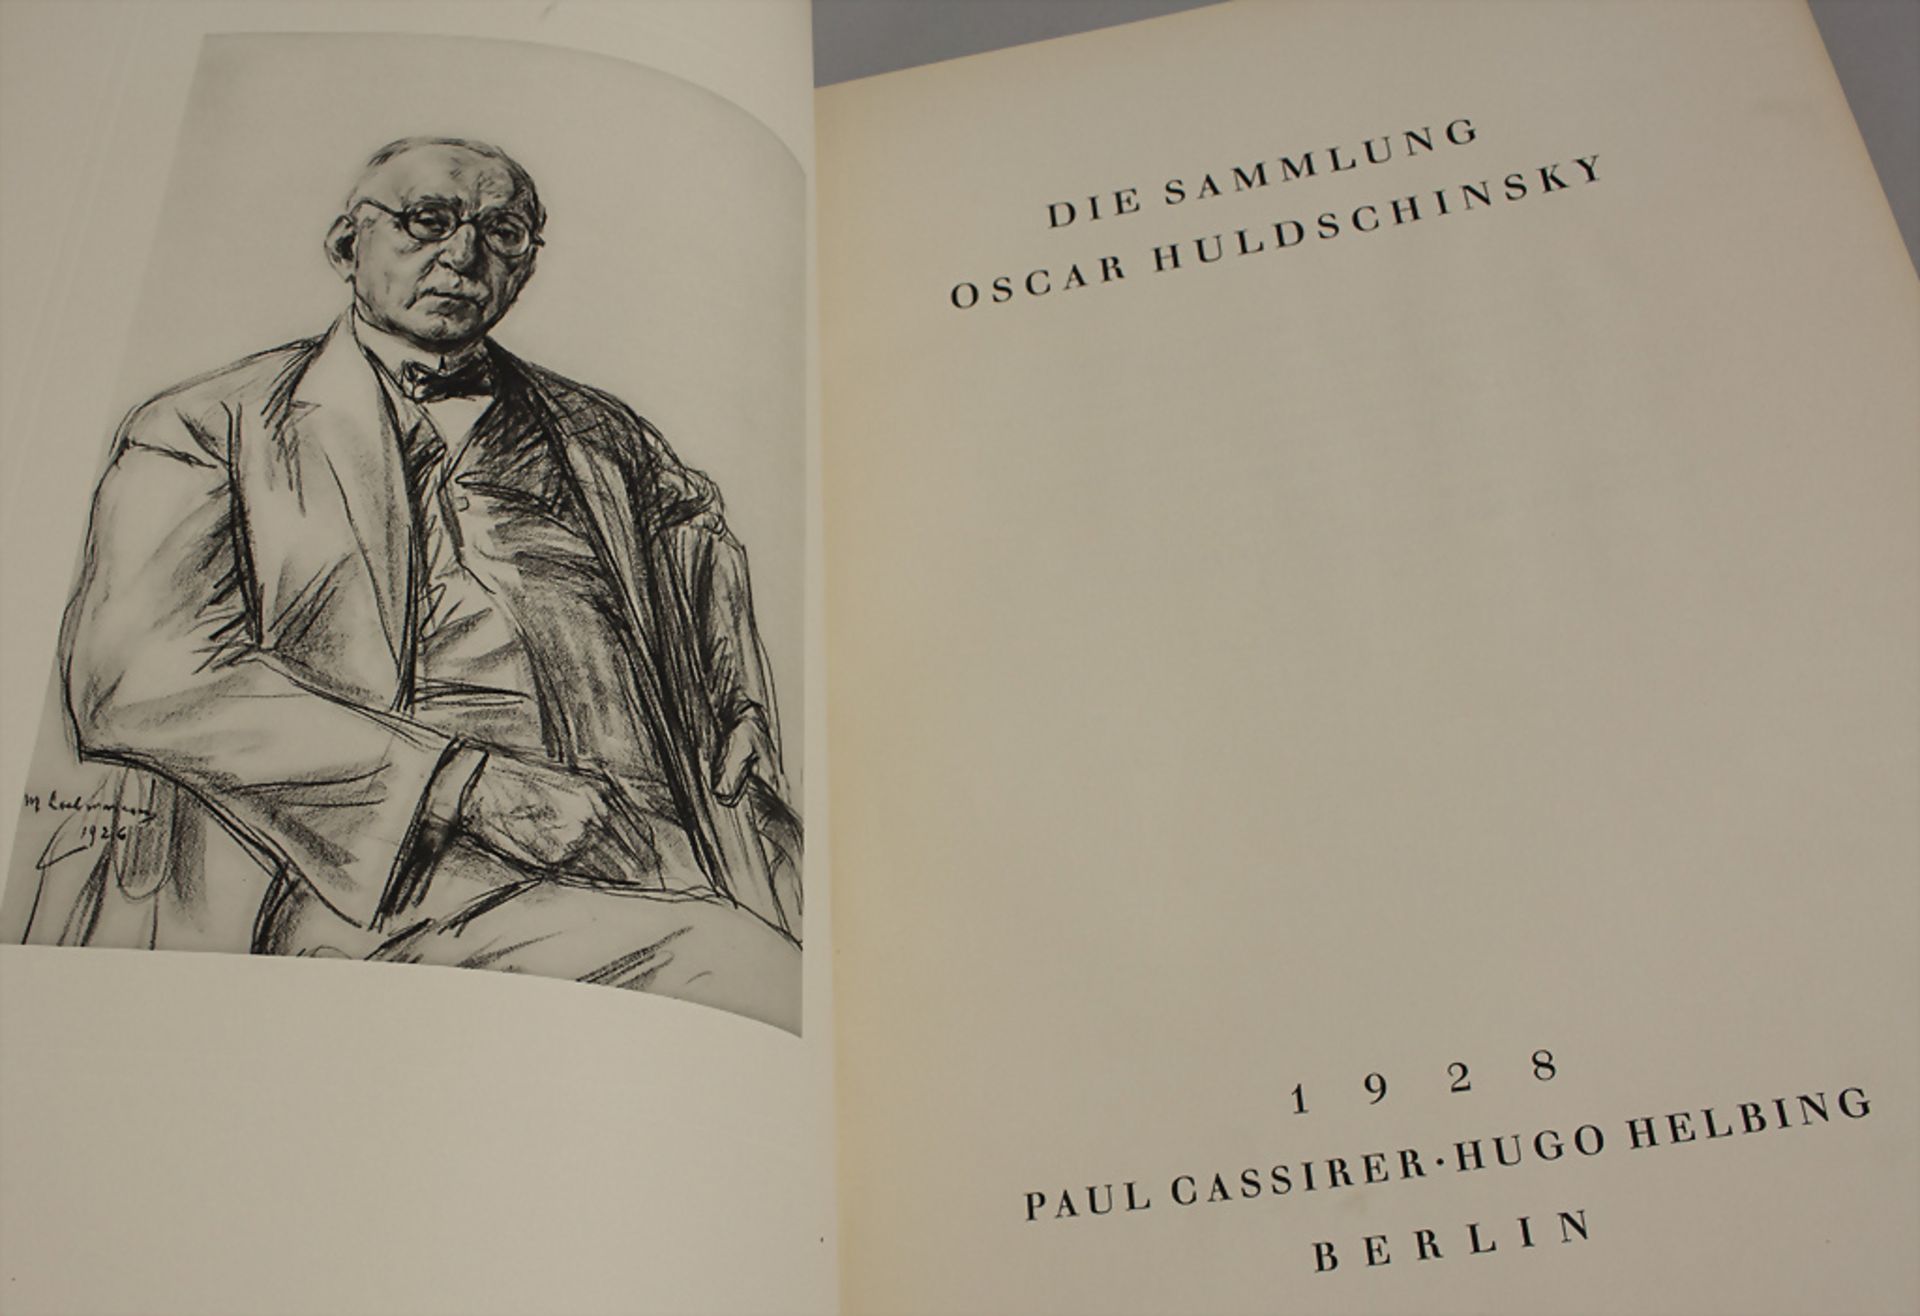 Wilhelm von Bode: Die Sammlung Oscar Huldschinsky, Berlin, 1928